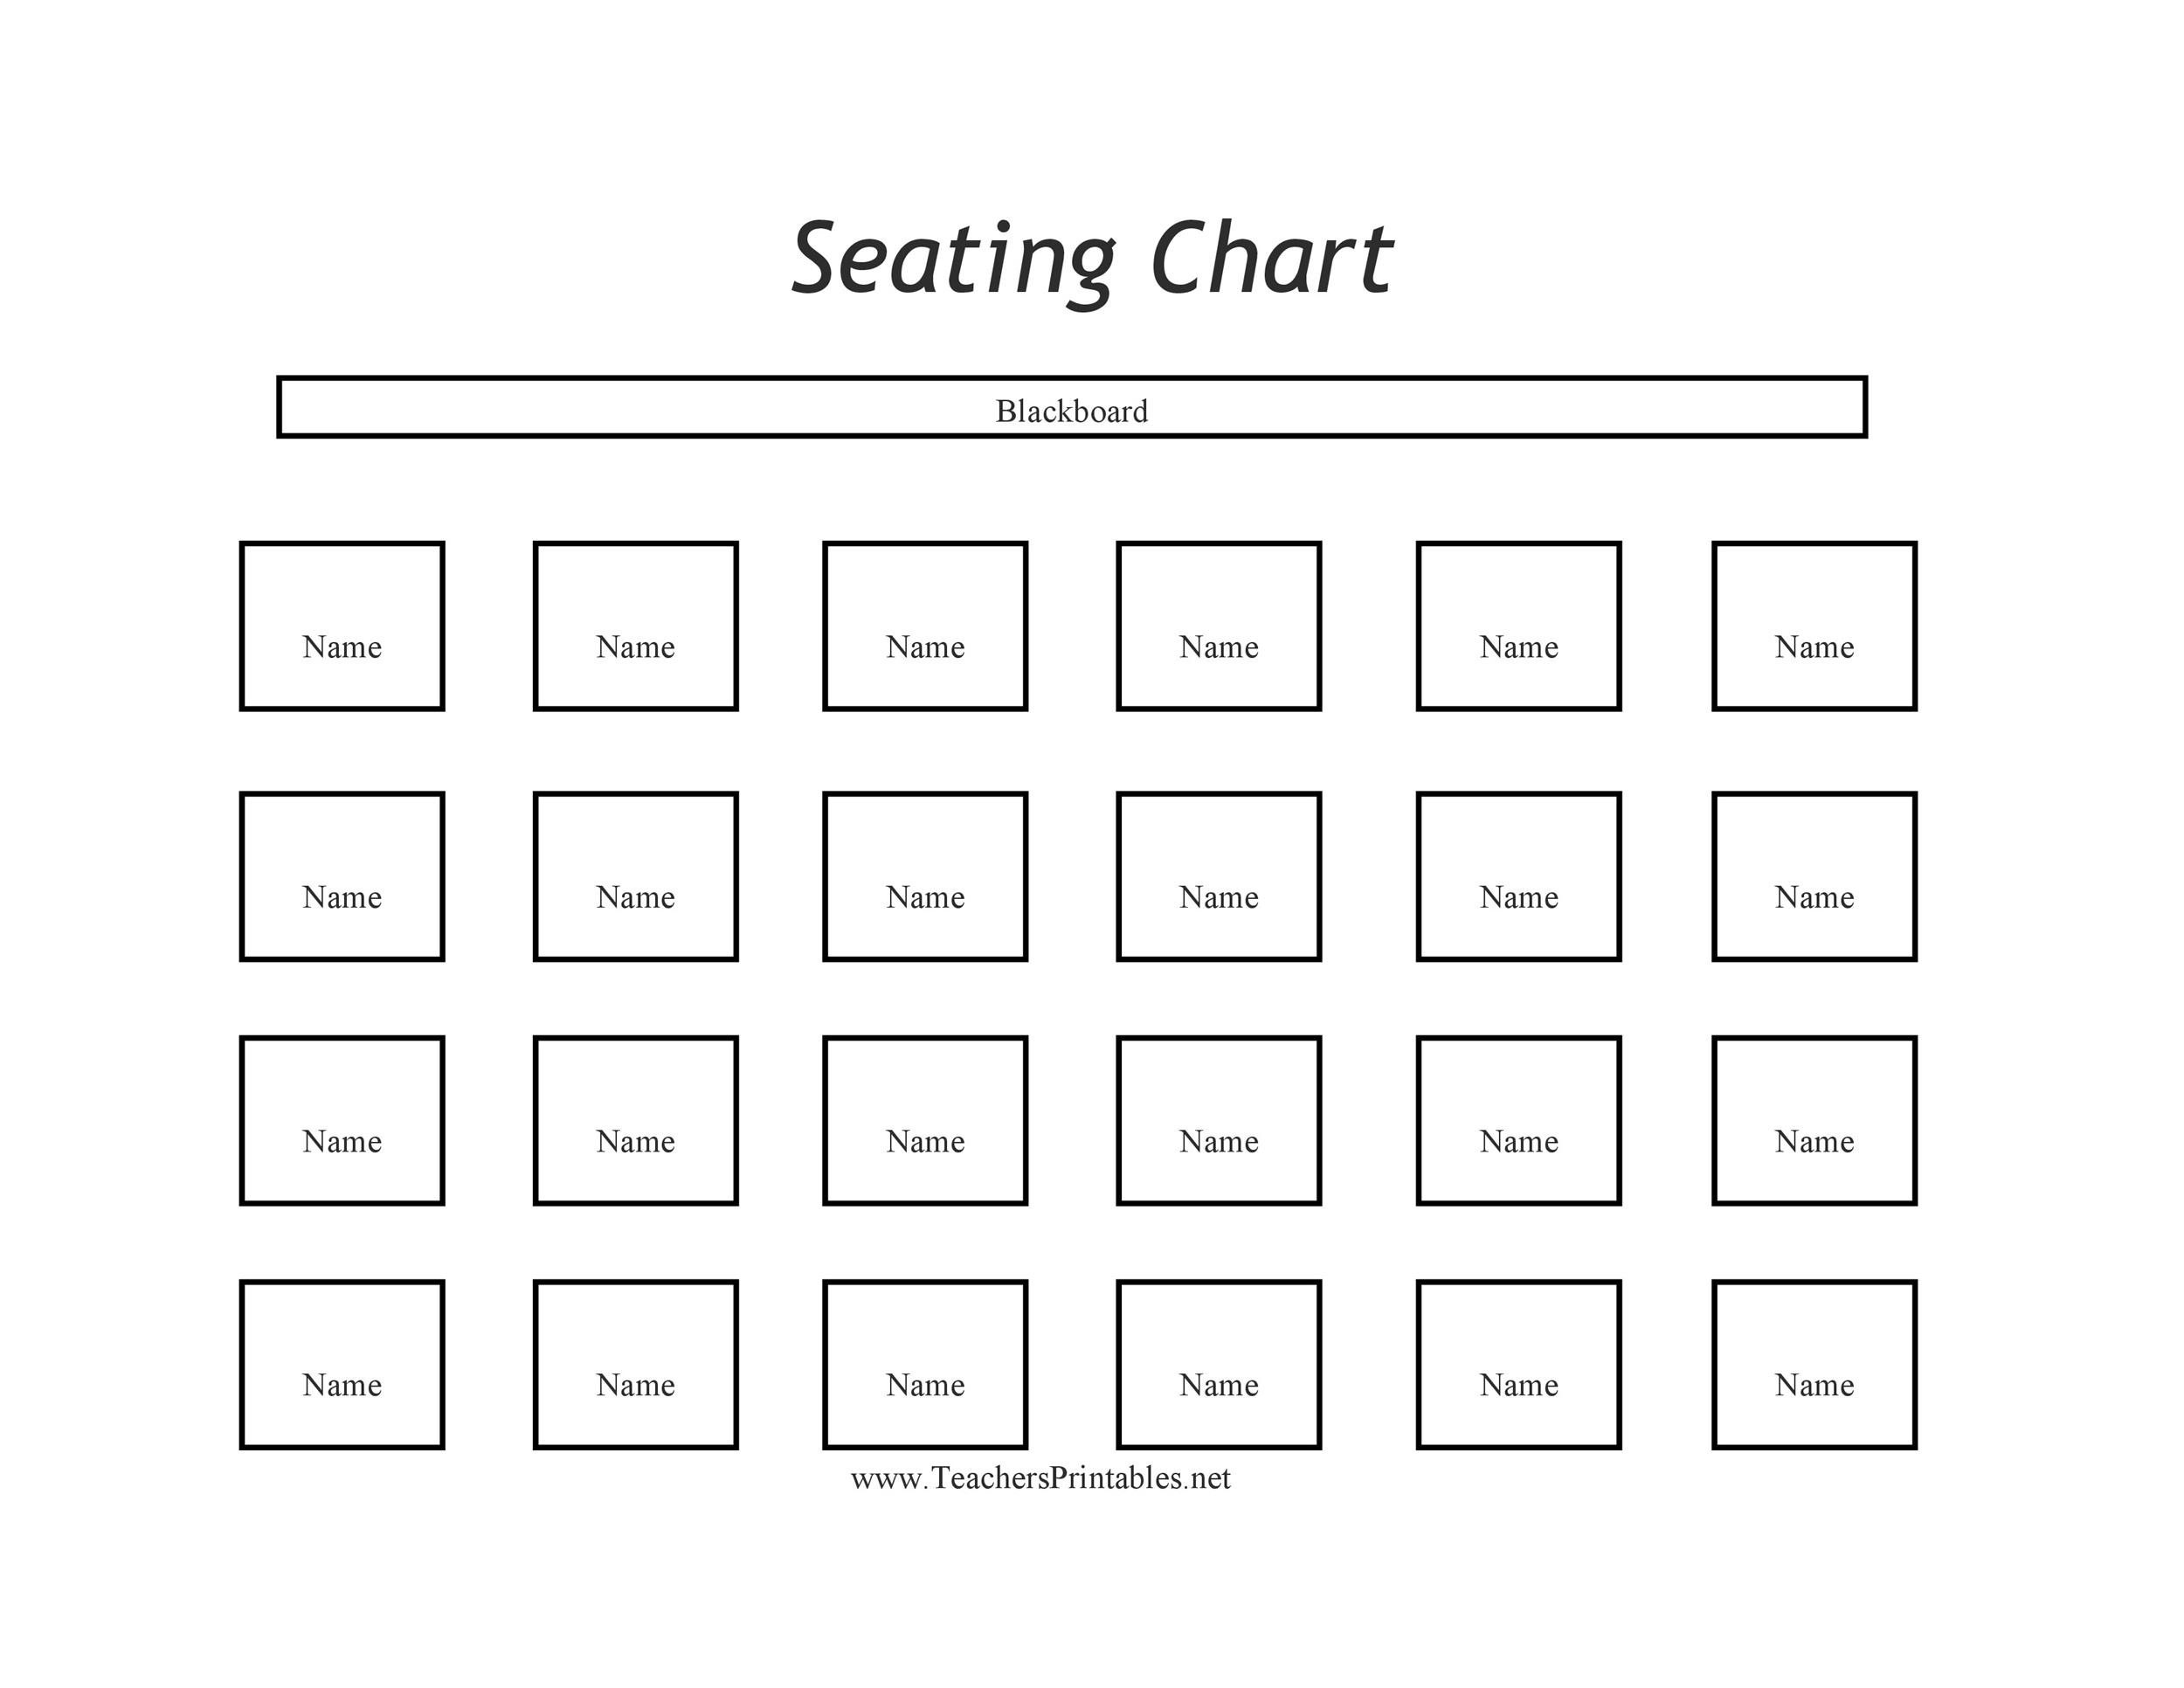 Рассадка класса шаблон. План рассадки класса шаблон. Seating Chart. Рассадка гостей на свадьбе шаблоны для печати.